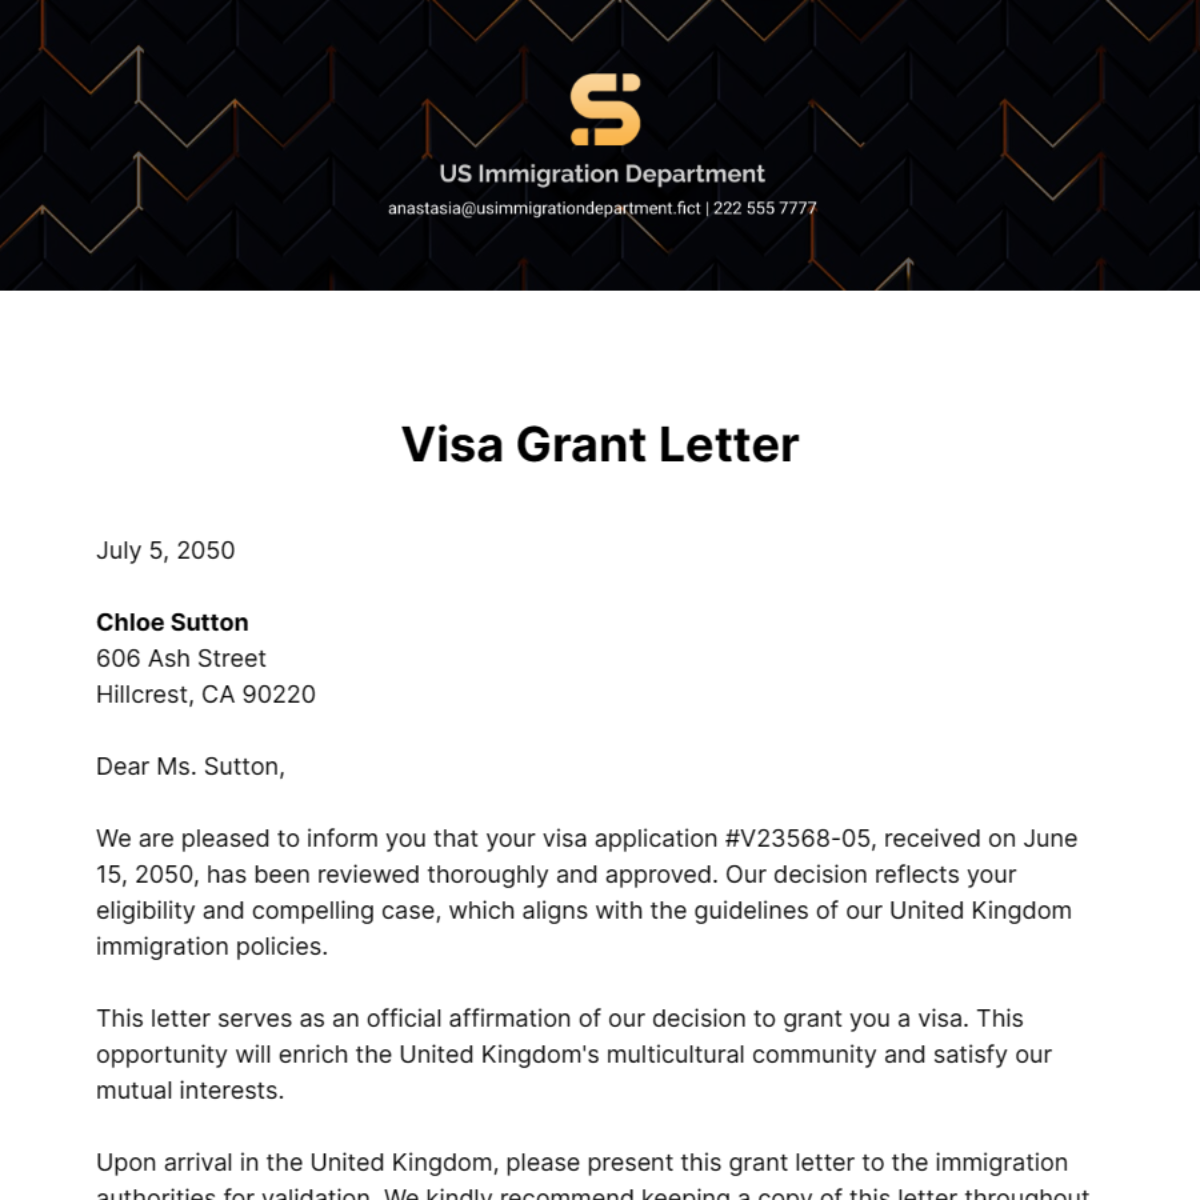 Visa Grant Letter Template